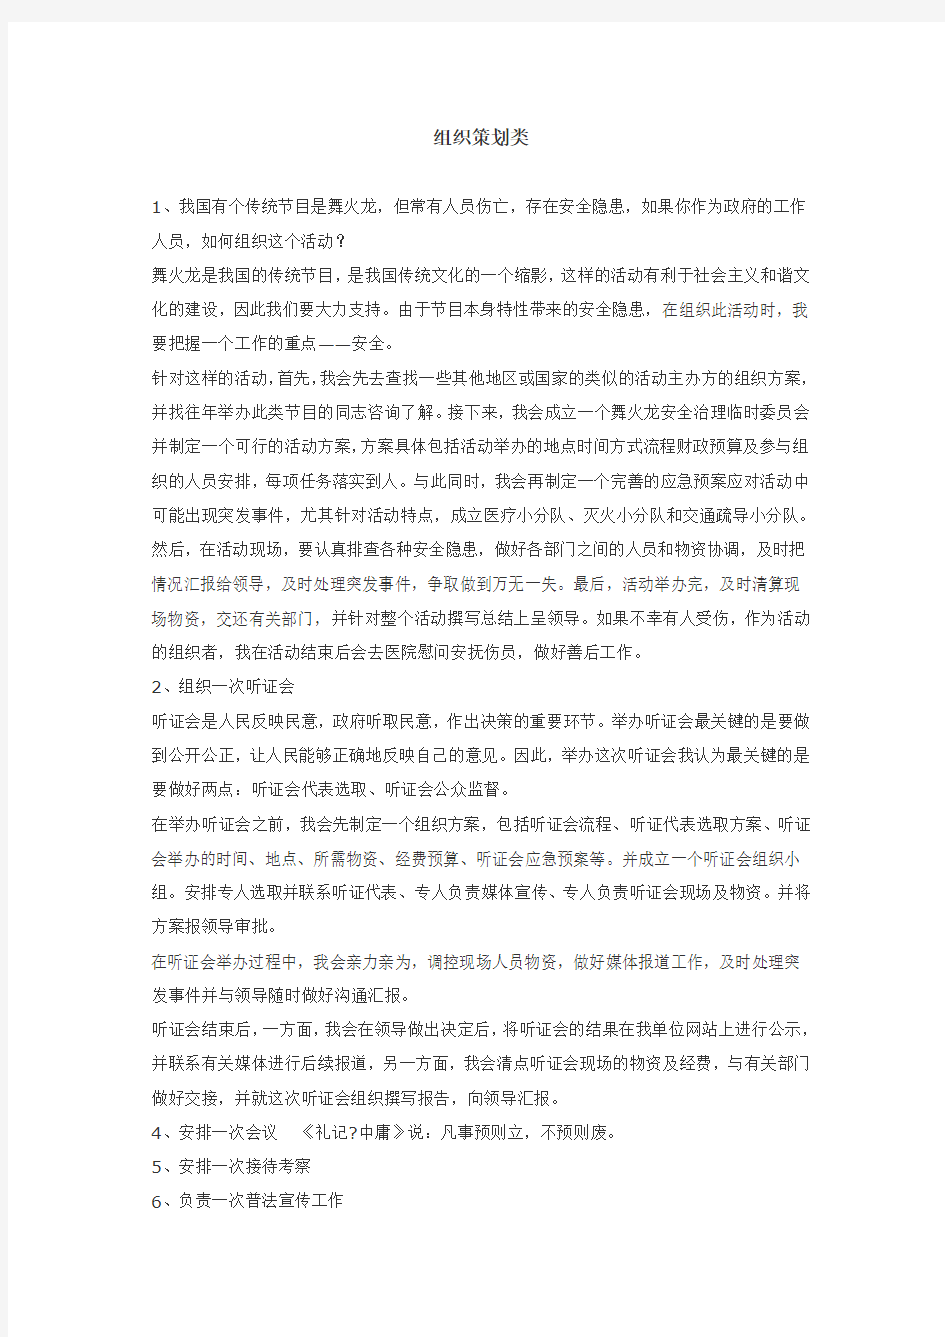 深圳公务员面试相关 执法类面试题目总结